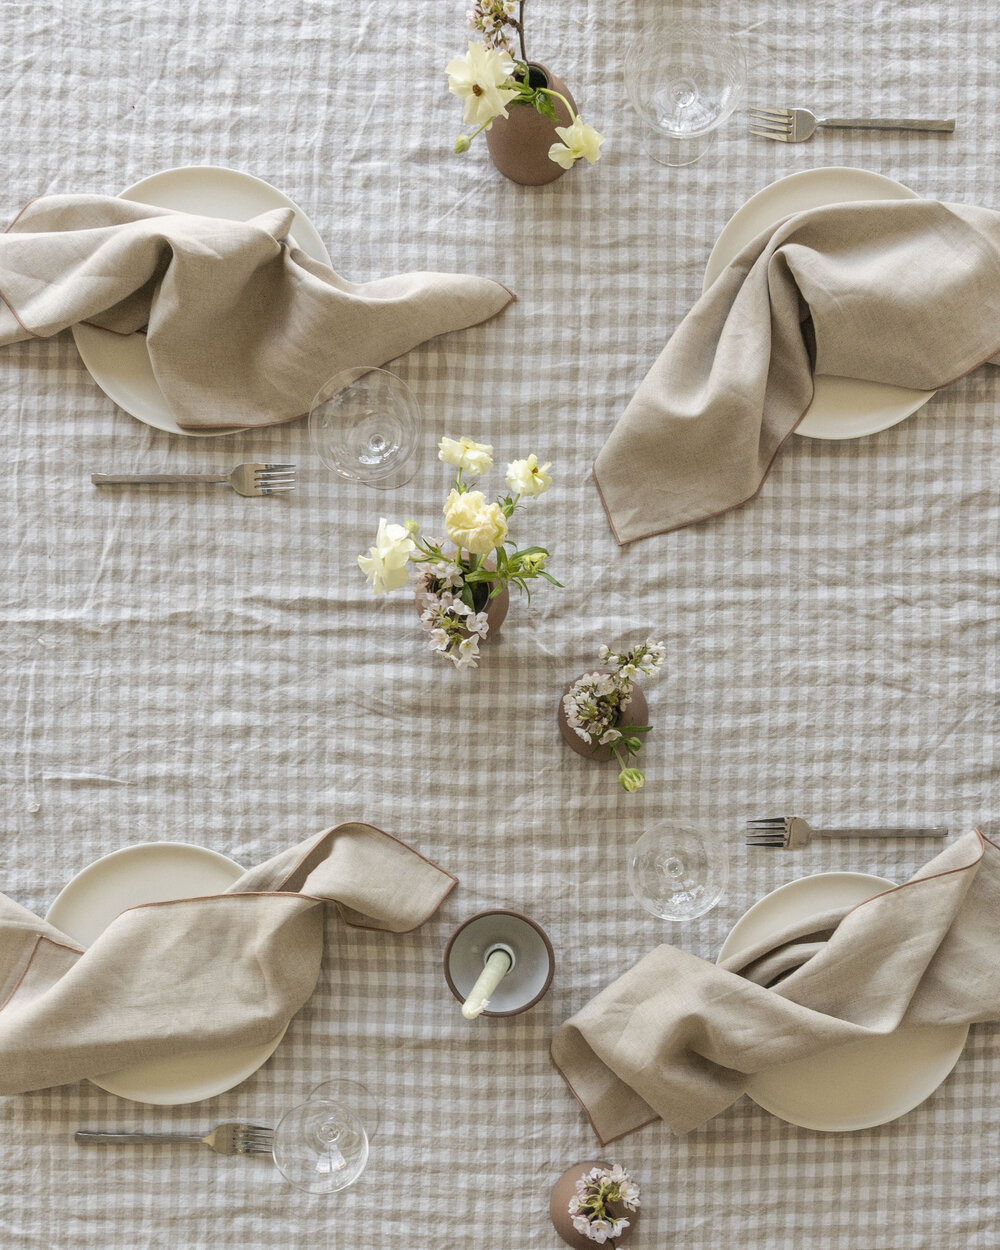 Encasa 100% Cotton Cloth Napkins Set of 12 with Natural Color & Size  17x17